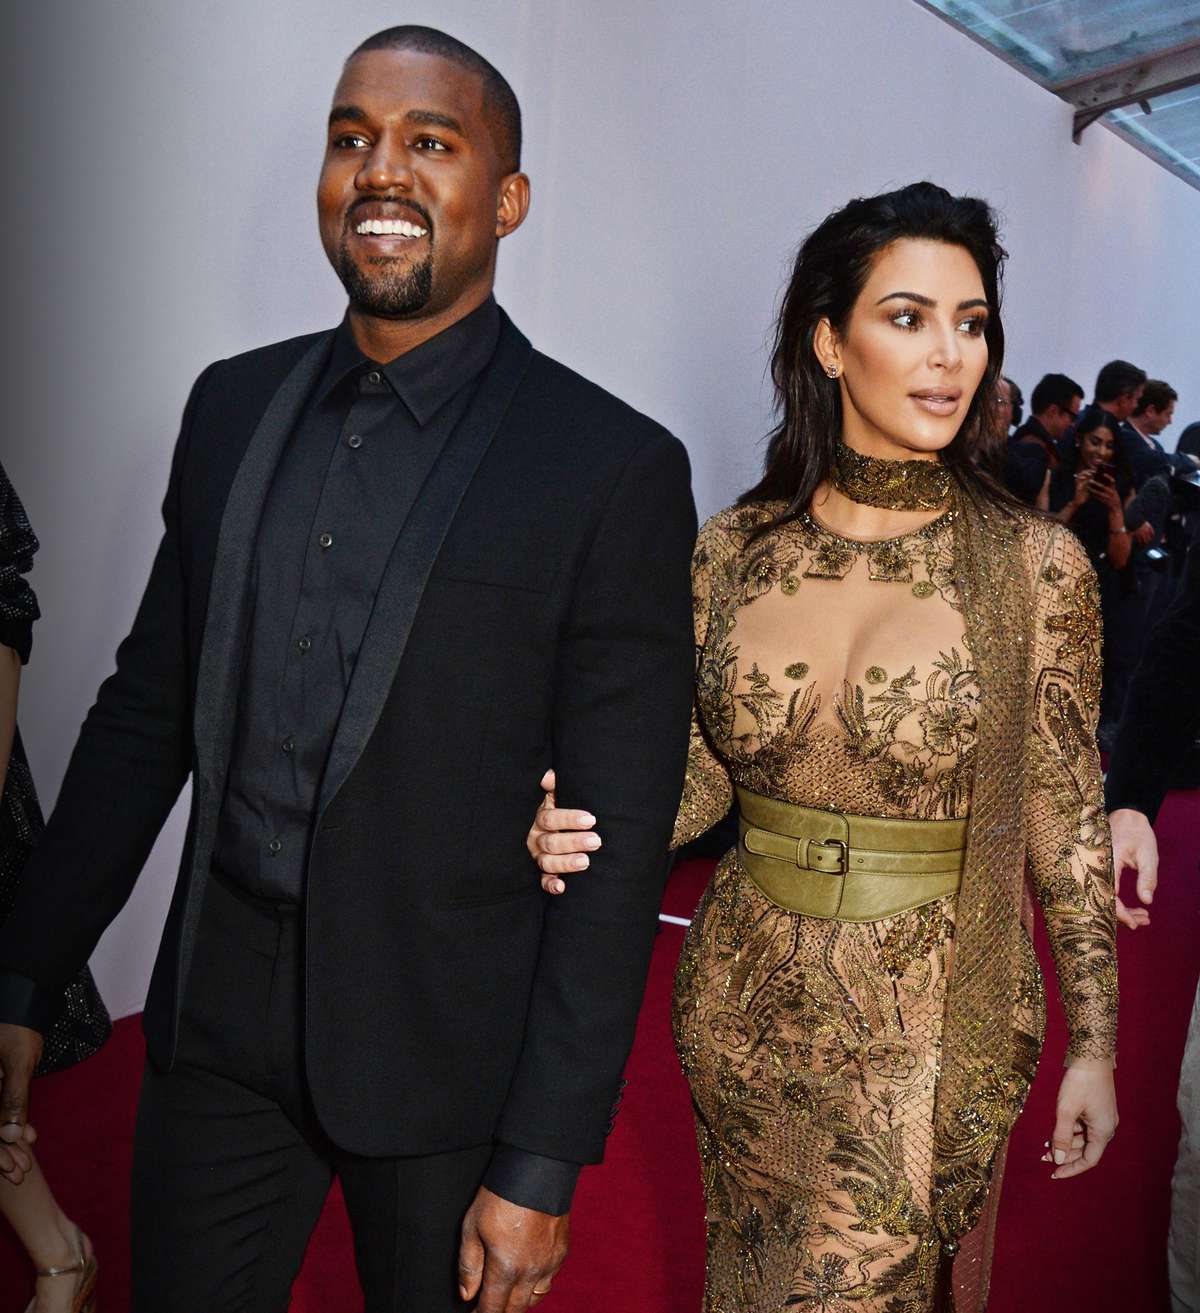 Kanye West and Kim Kardashian West - May 23, 2016